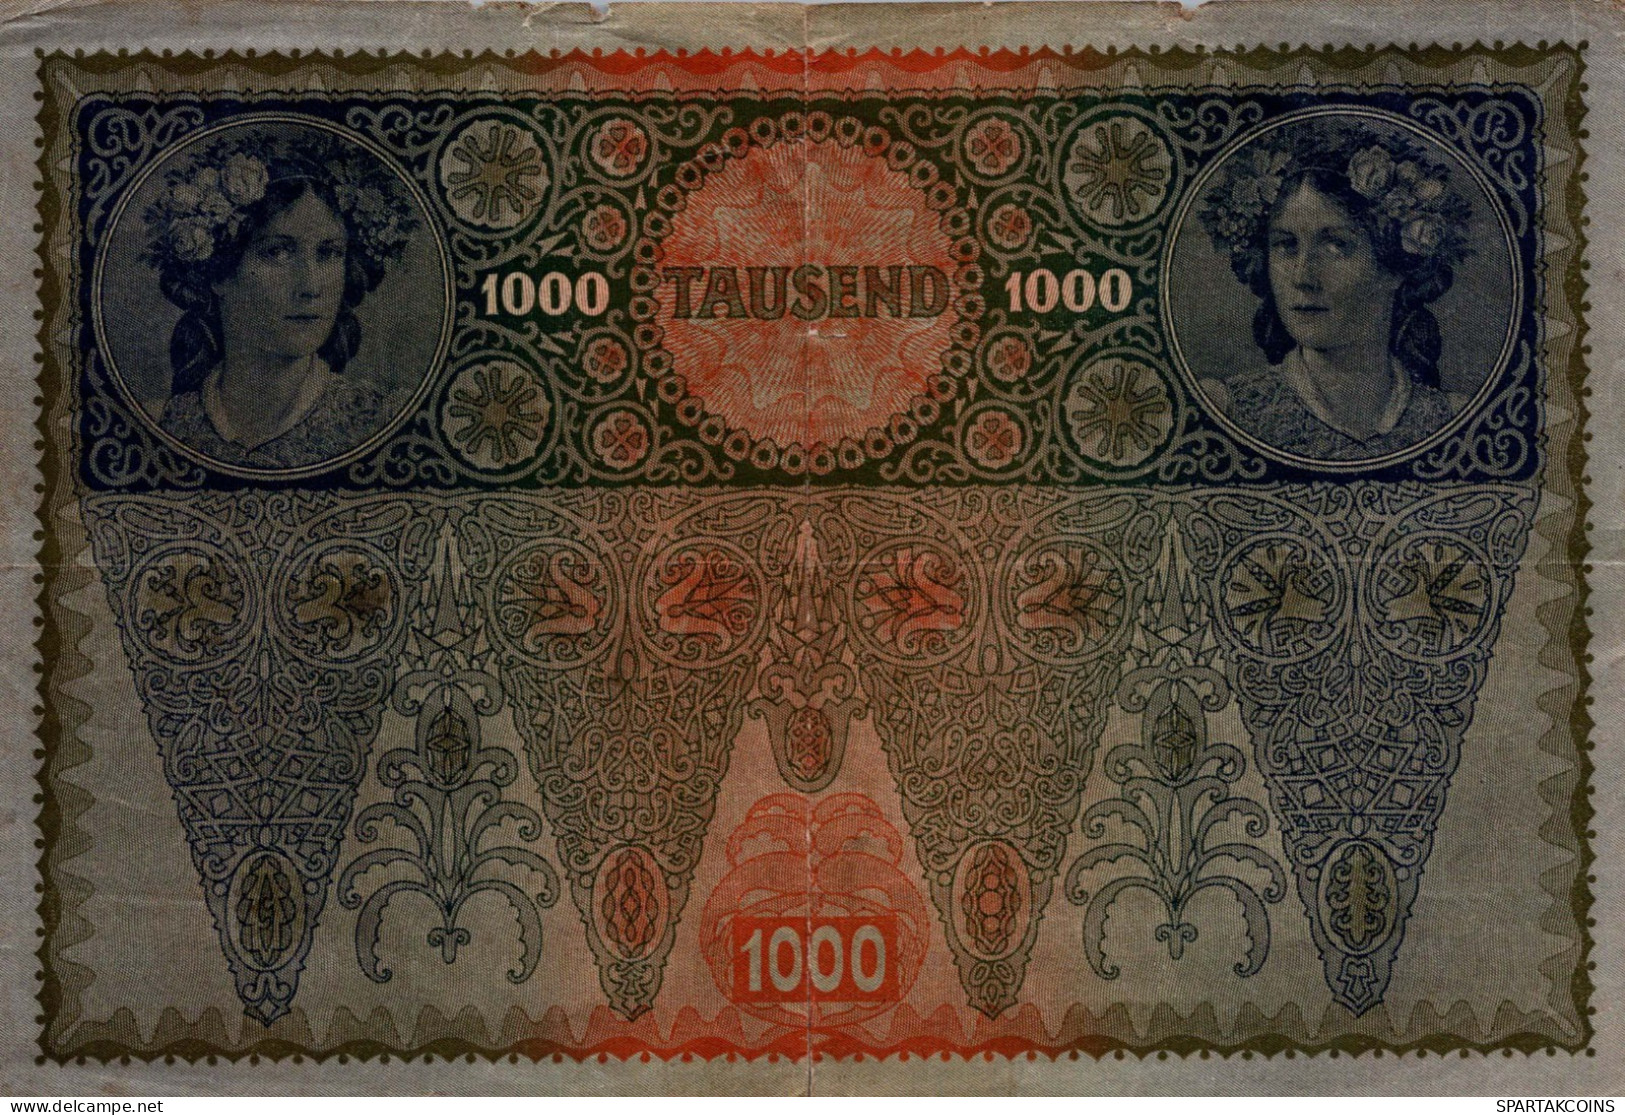 10000 KRONEN 1902 Österreich Papiergeld Banknote #PL317 - [11] Local Banknote Issues